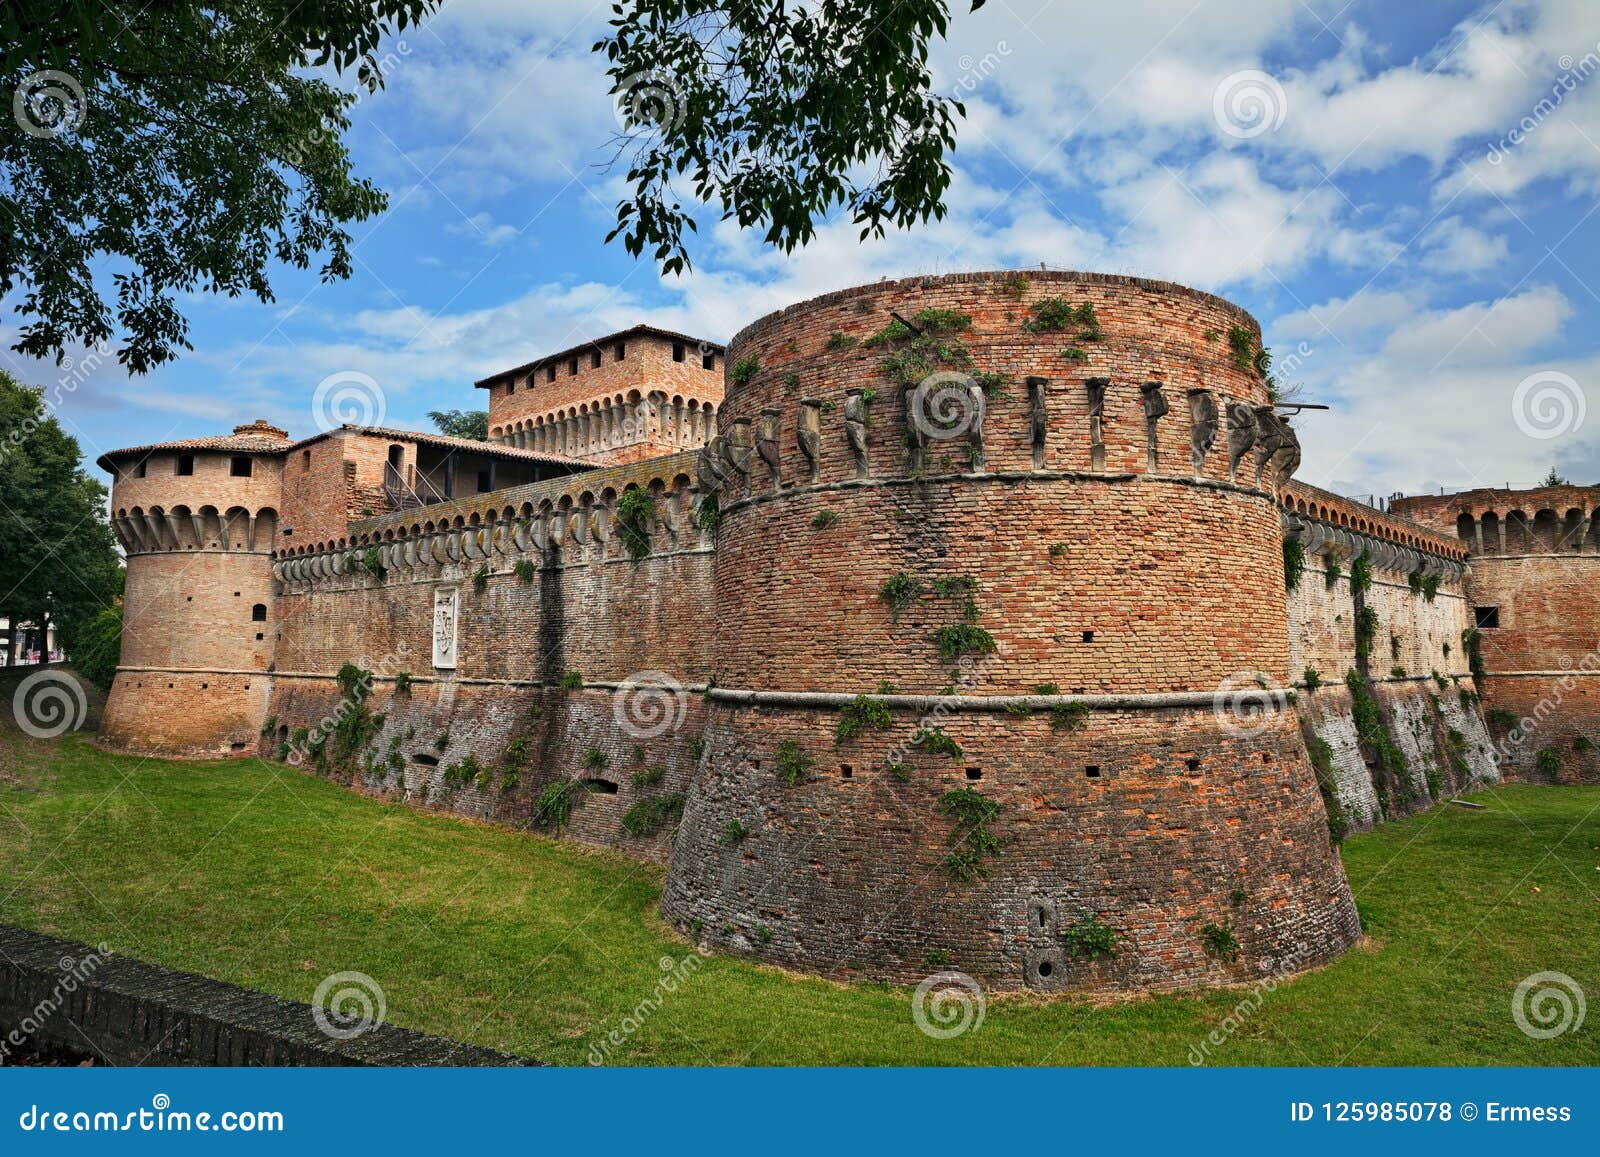 forli, emilia-romagna, italy: ancient fortress of caterina sforza